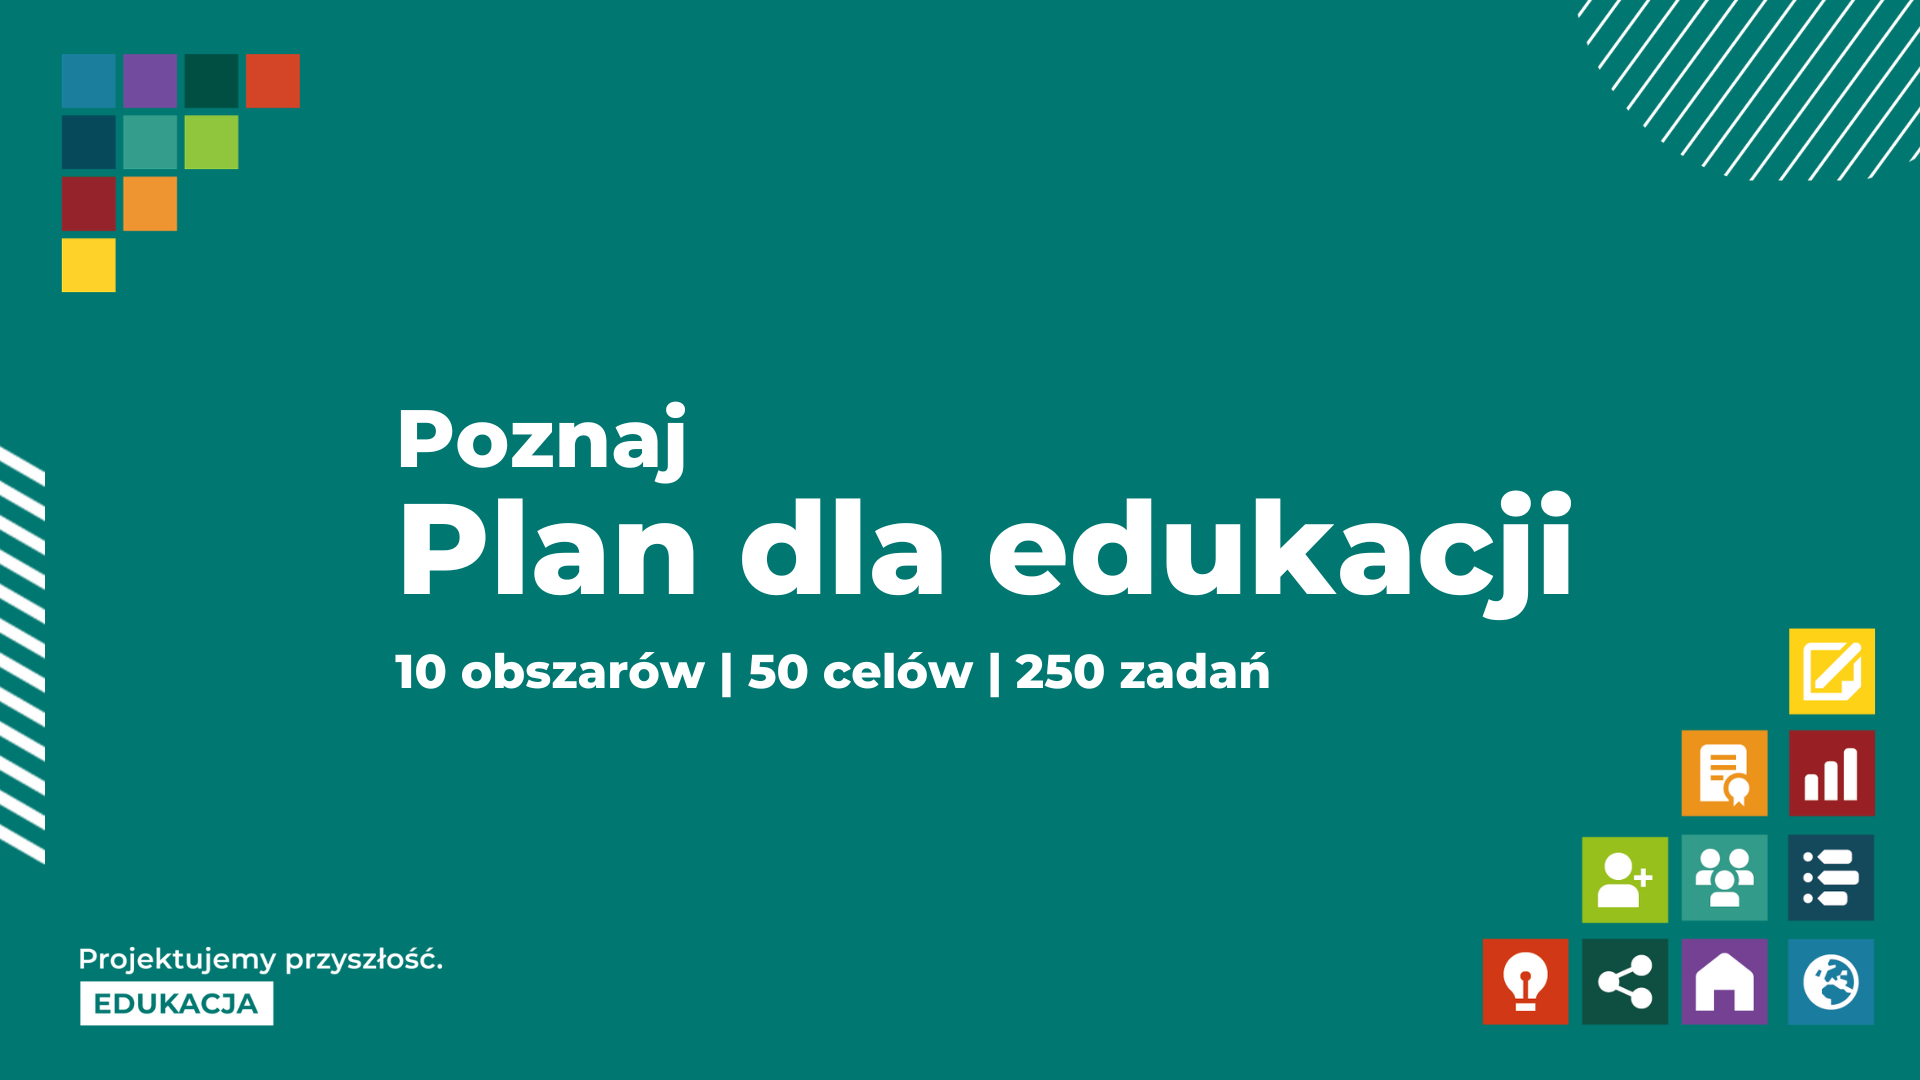 Czas na realizację Planu dla edukacji!